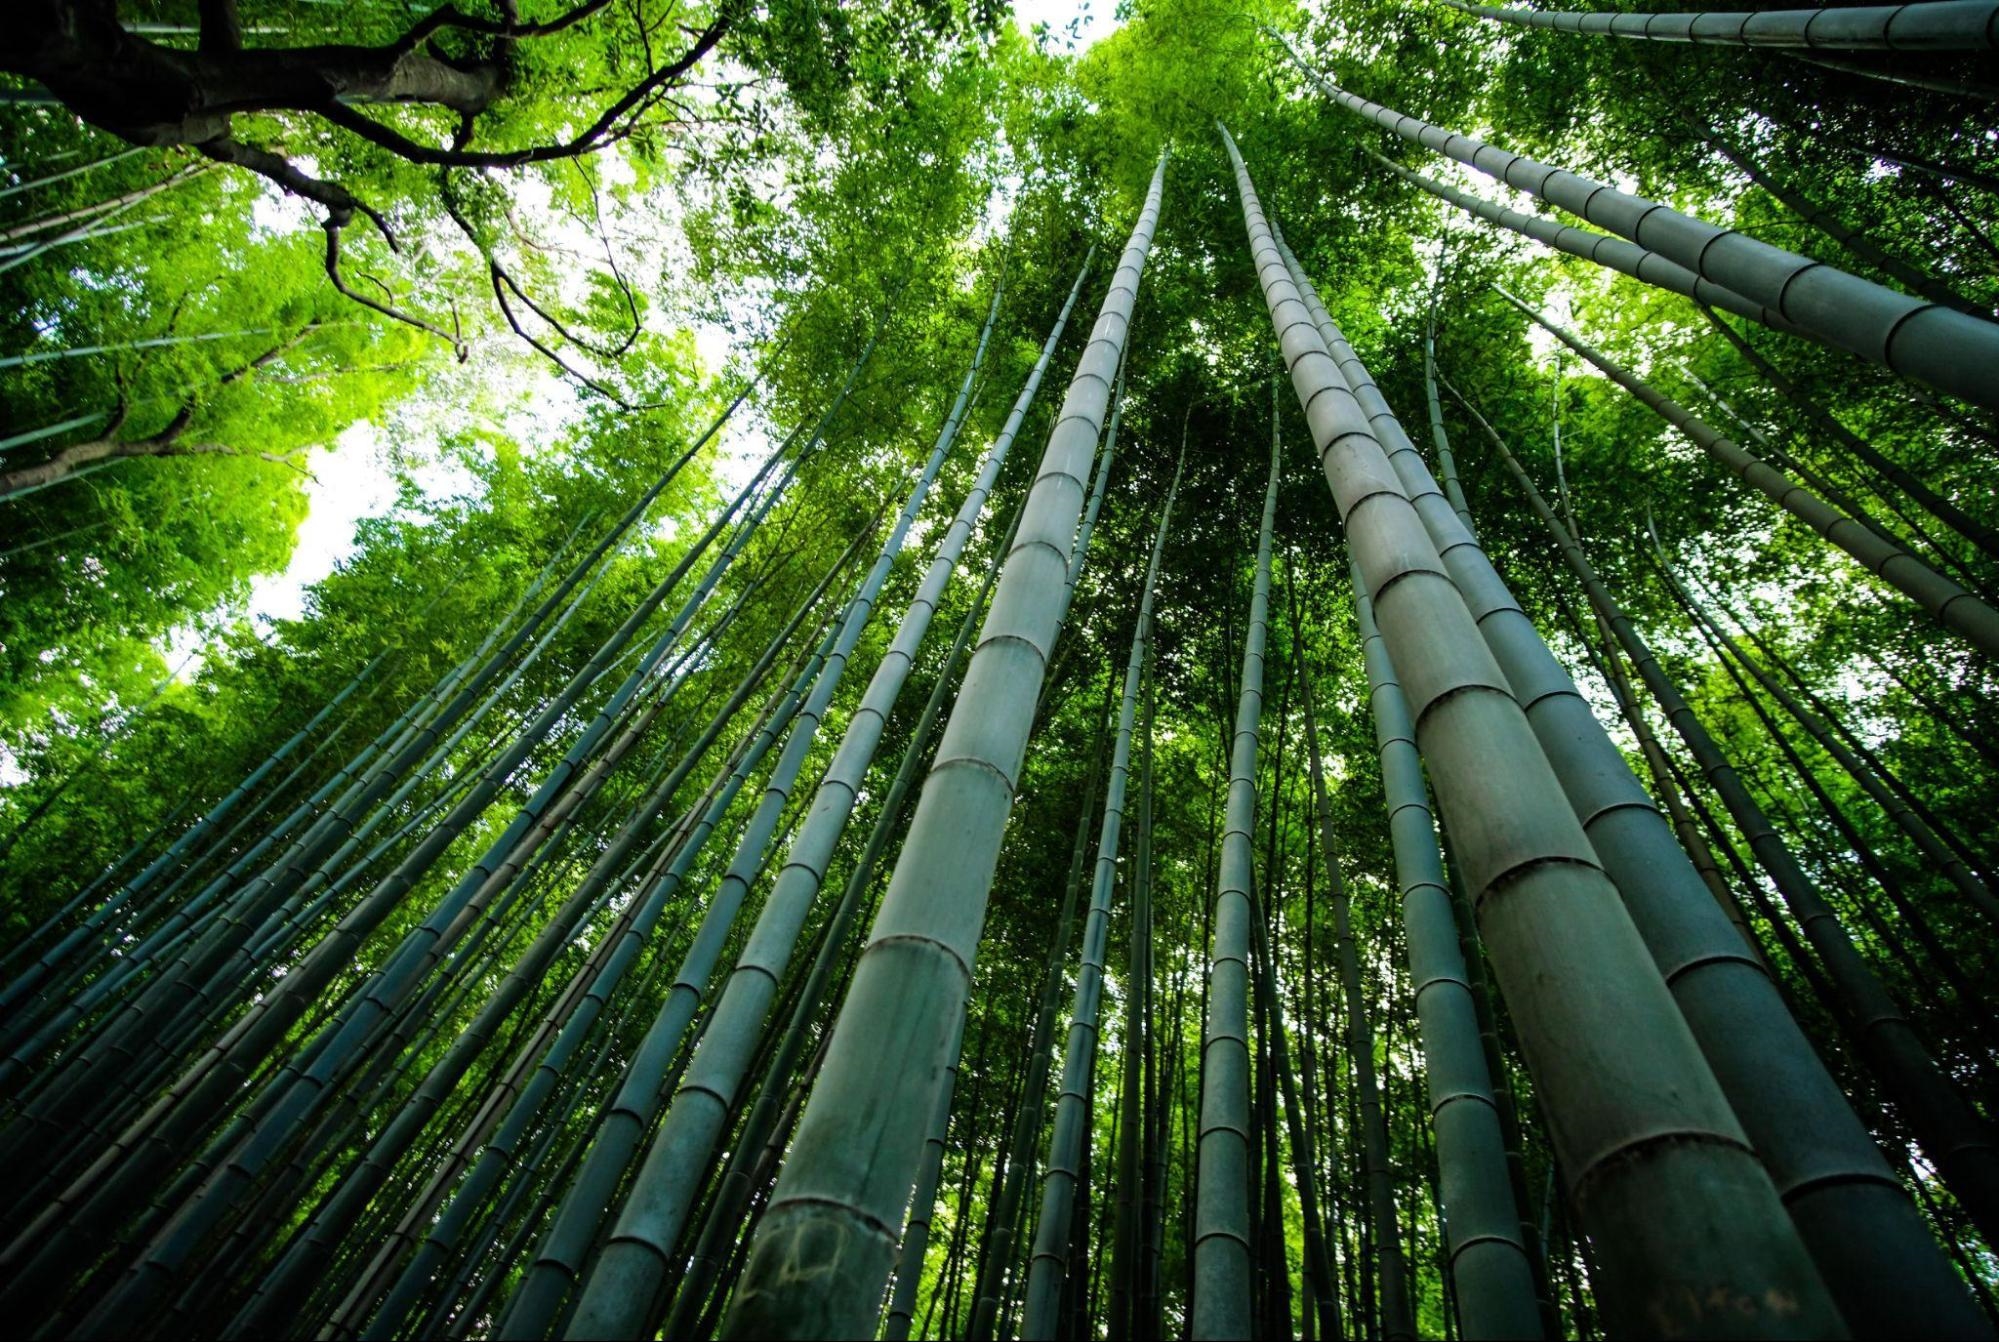 臺灣各地常見的竹子適合發展自然碳匯，固碳量是樹木的 2-4 倍